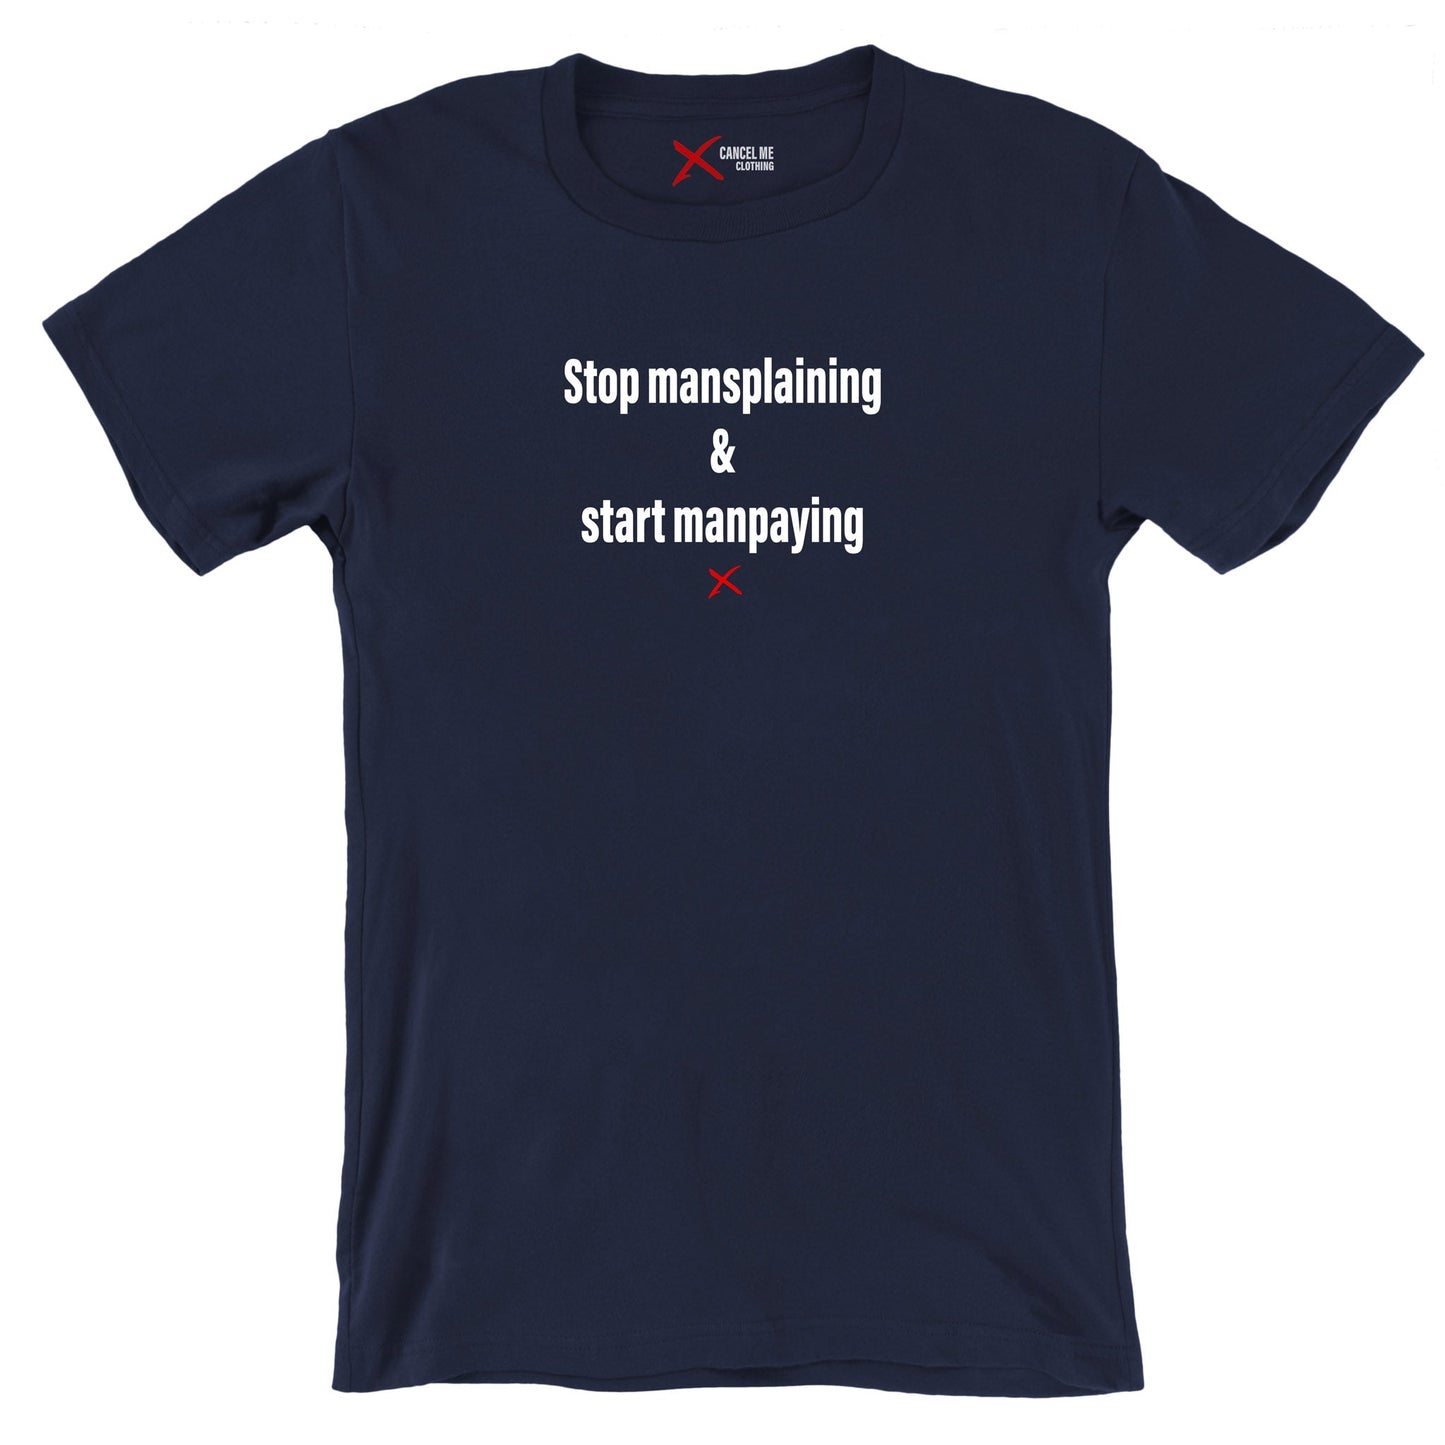 Stop mansplaining & start manpaying - Shirt